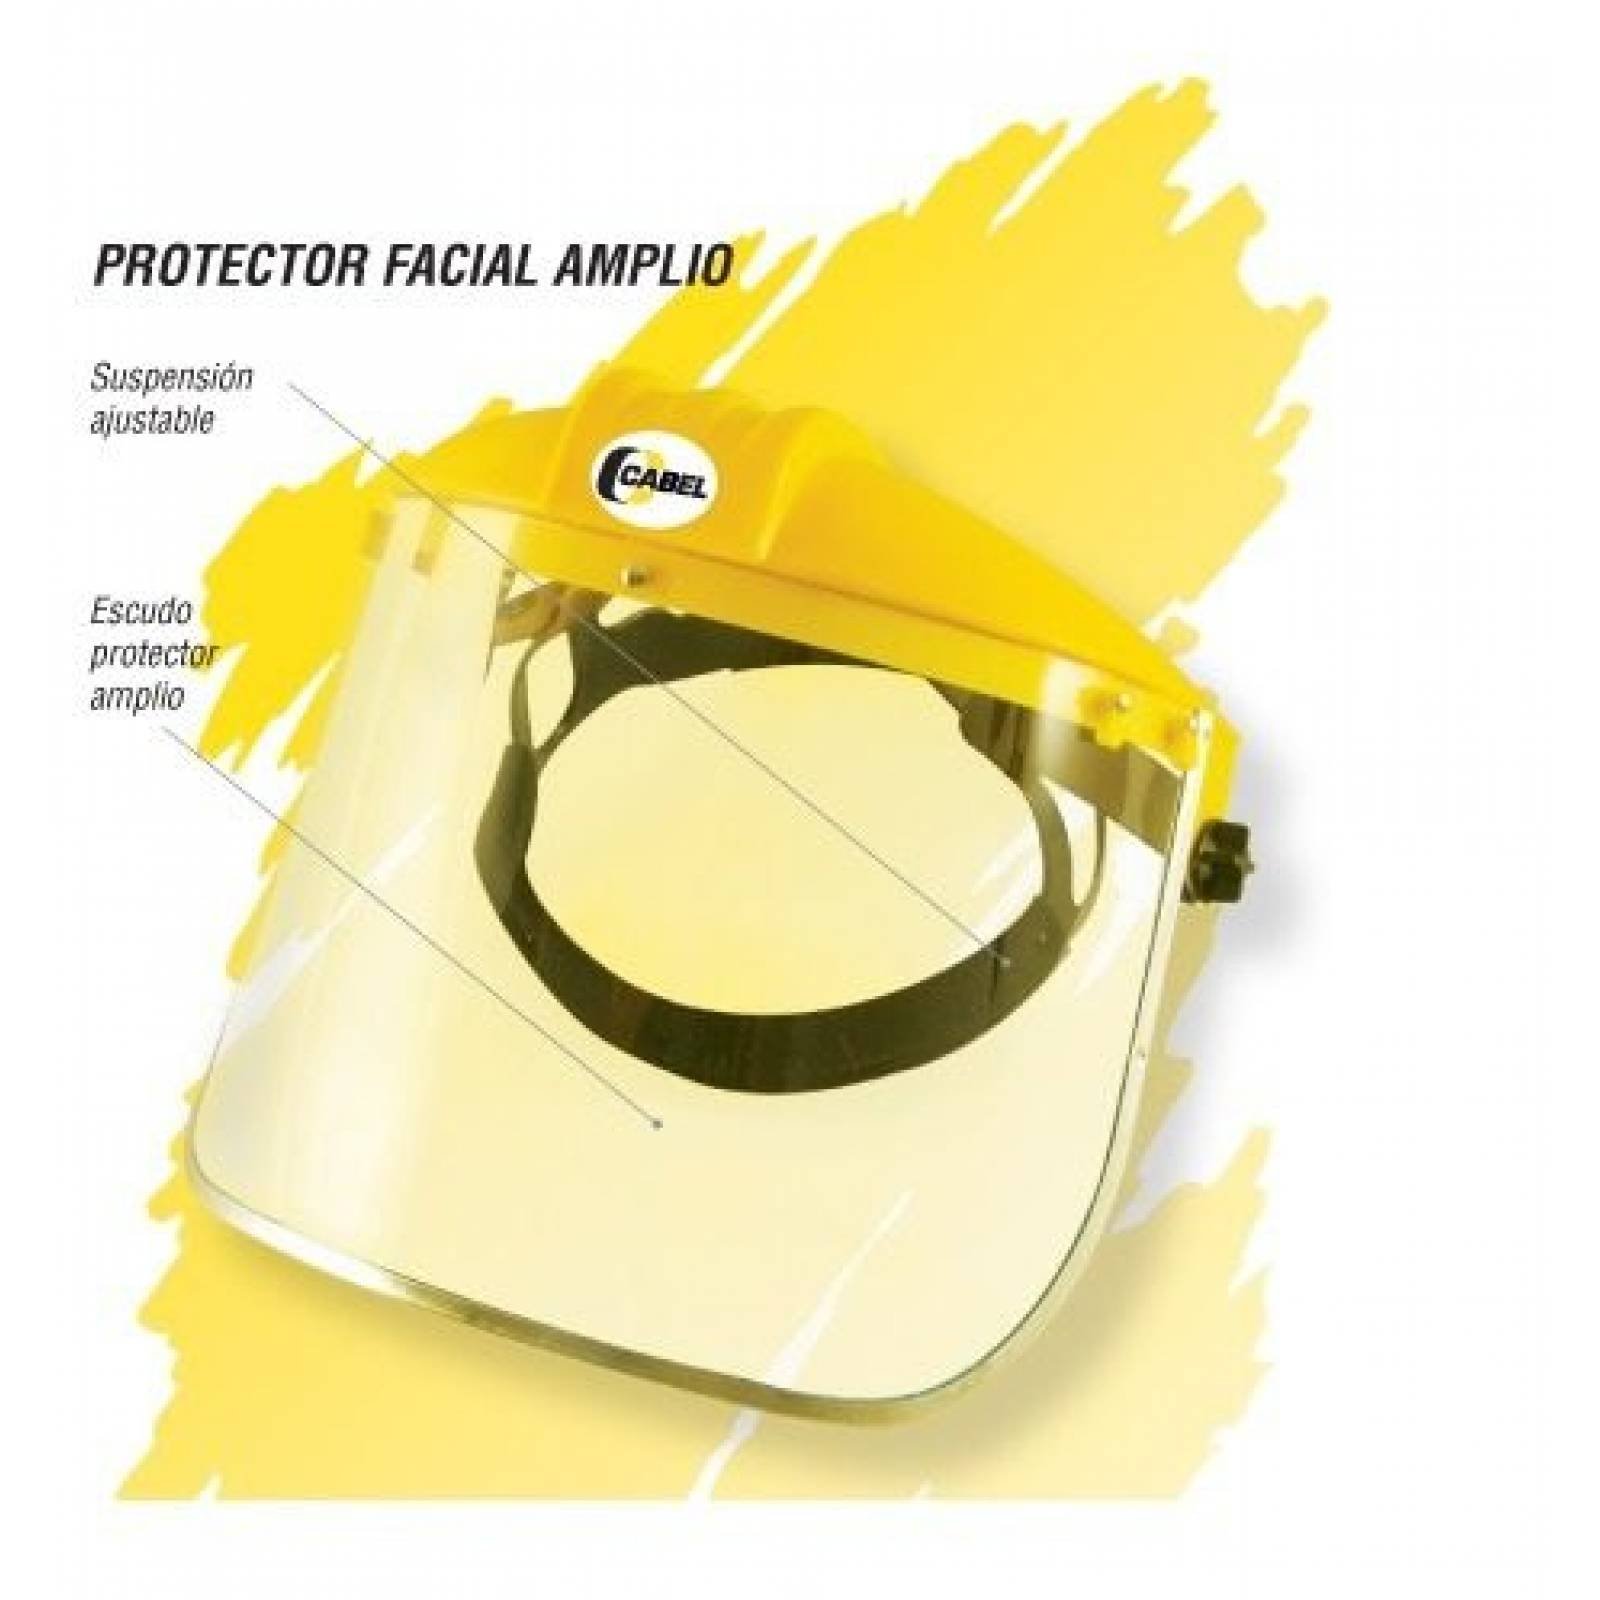 Protector Facial Amplio Suspension Ajustable Cabel CTA-P